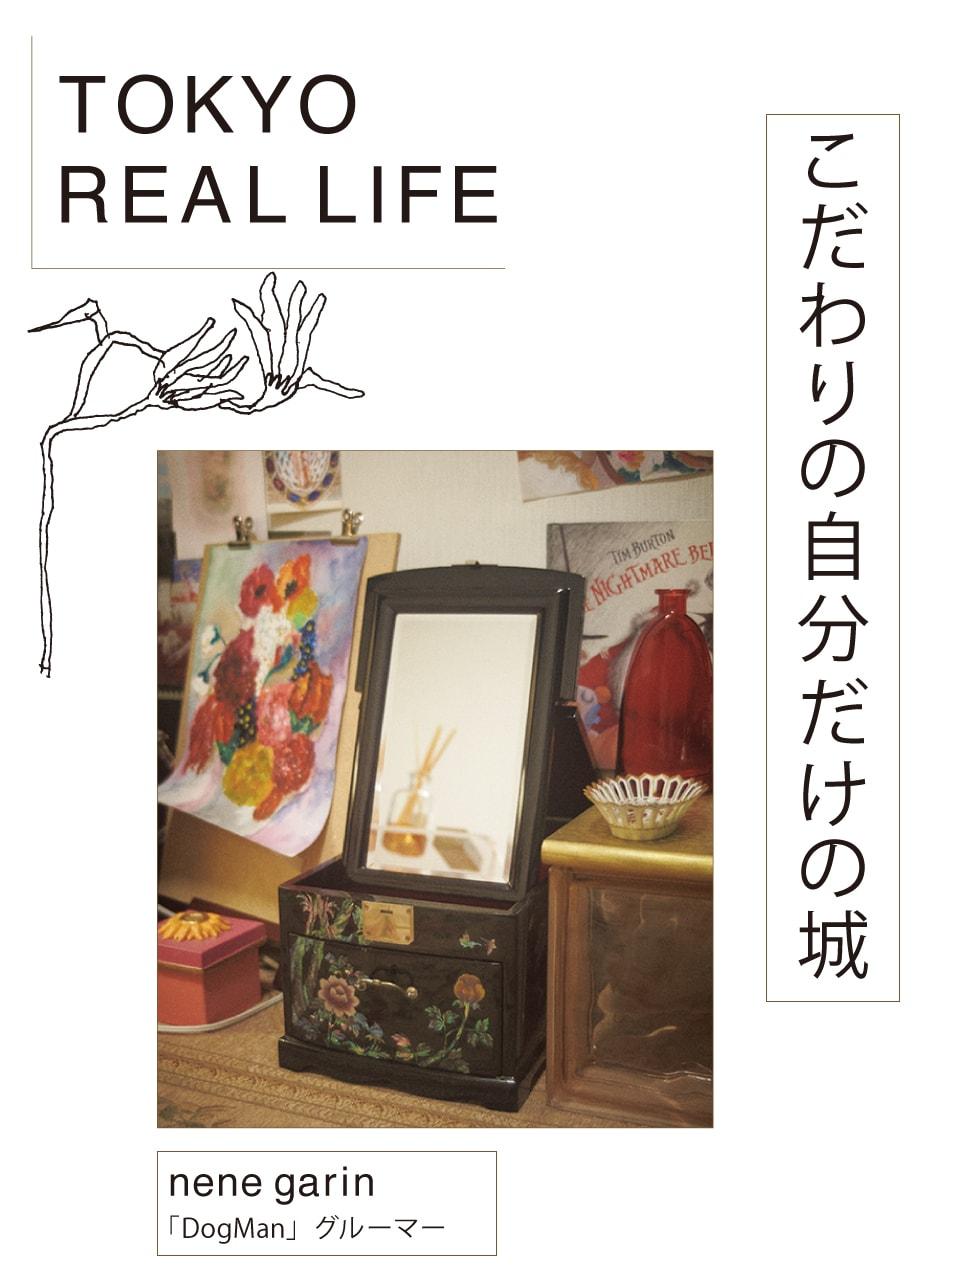 「あちこちで見つけた 珍品をかわいく飾る」【 TOKYO REAL LIFE vol.5 nene garinさん】